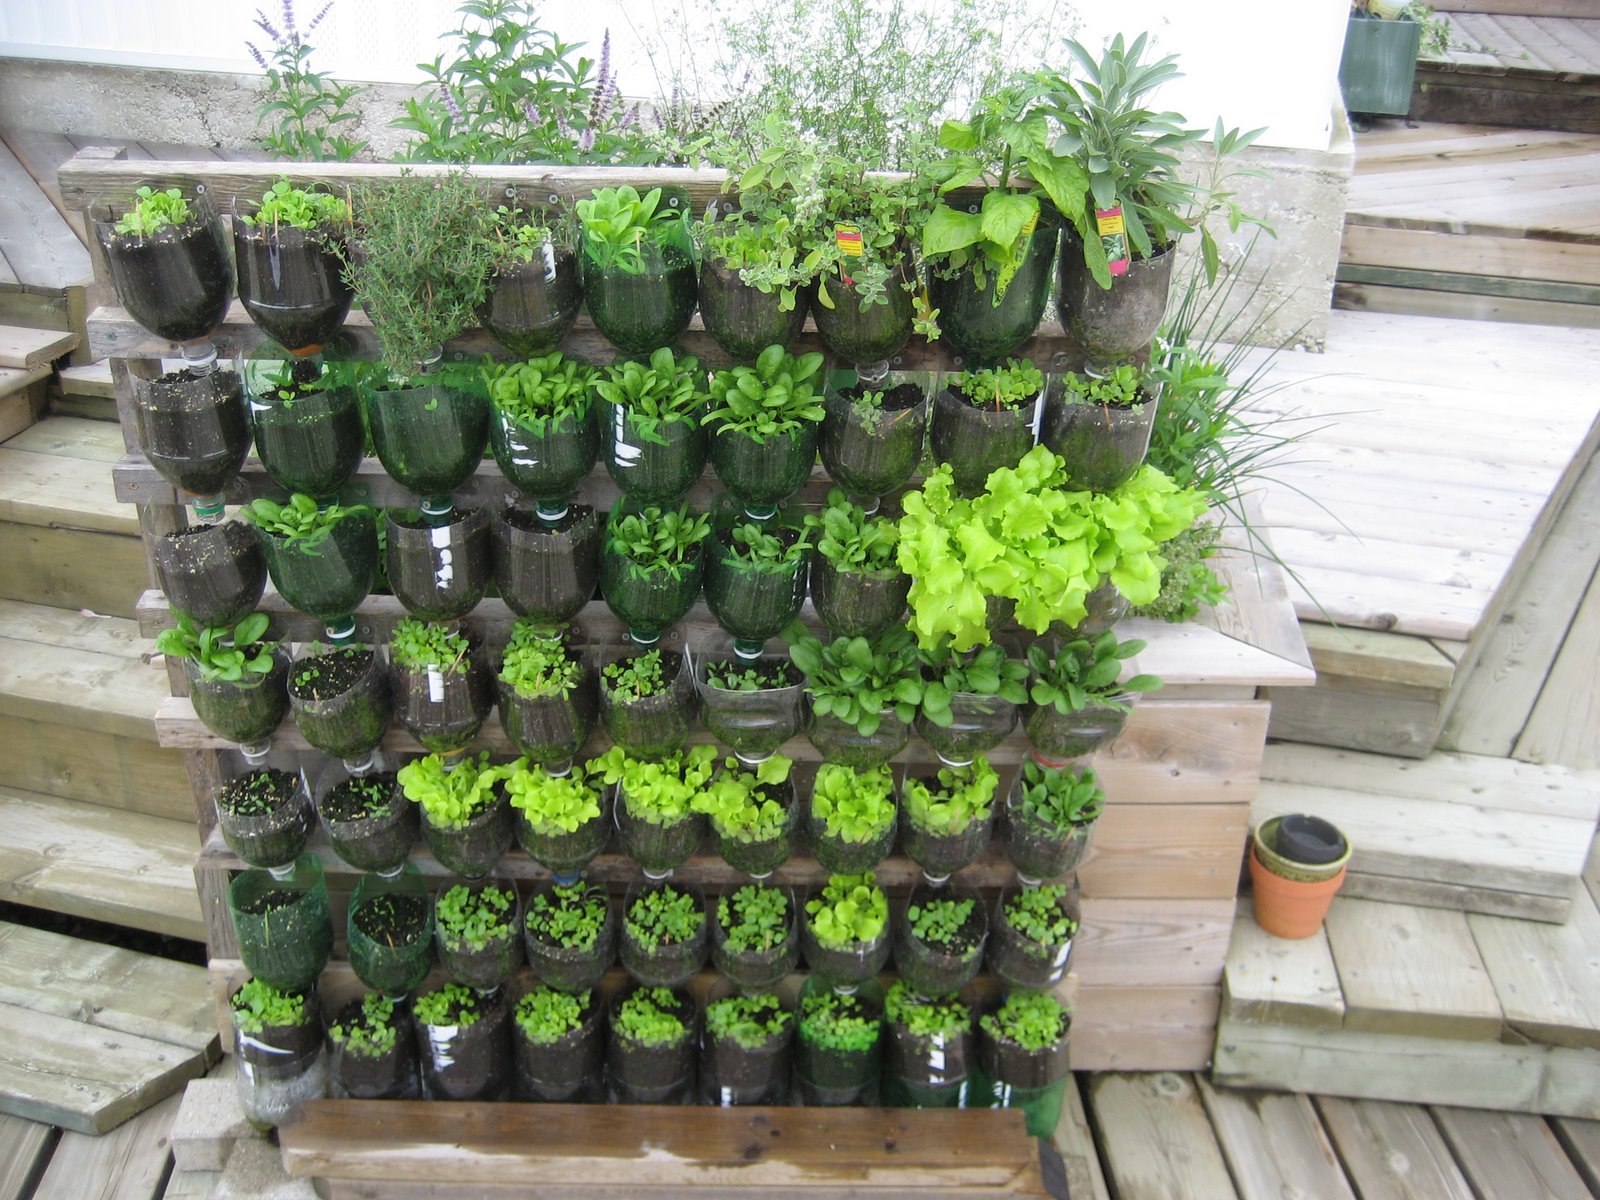 20+ Vertical Vegetable Garden Ideas   Home Design, Garden ...